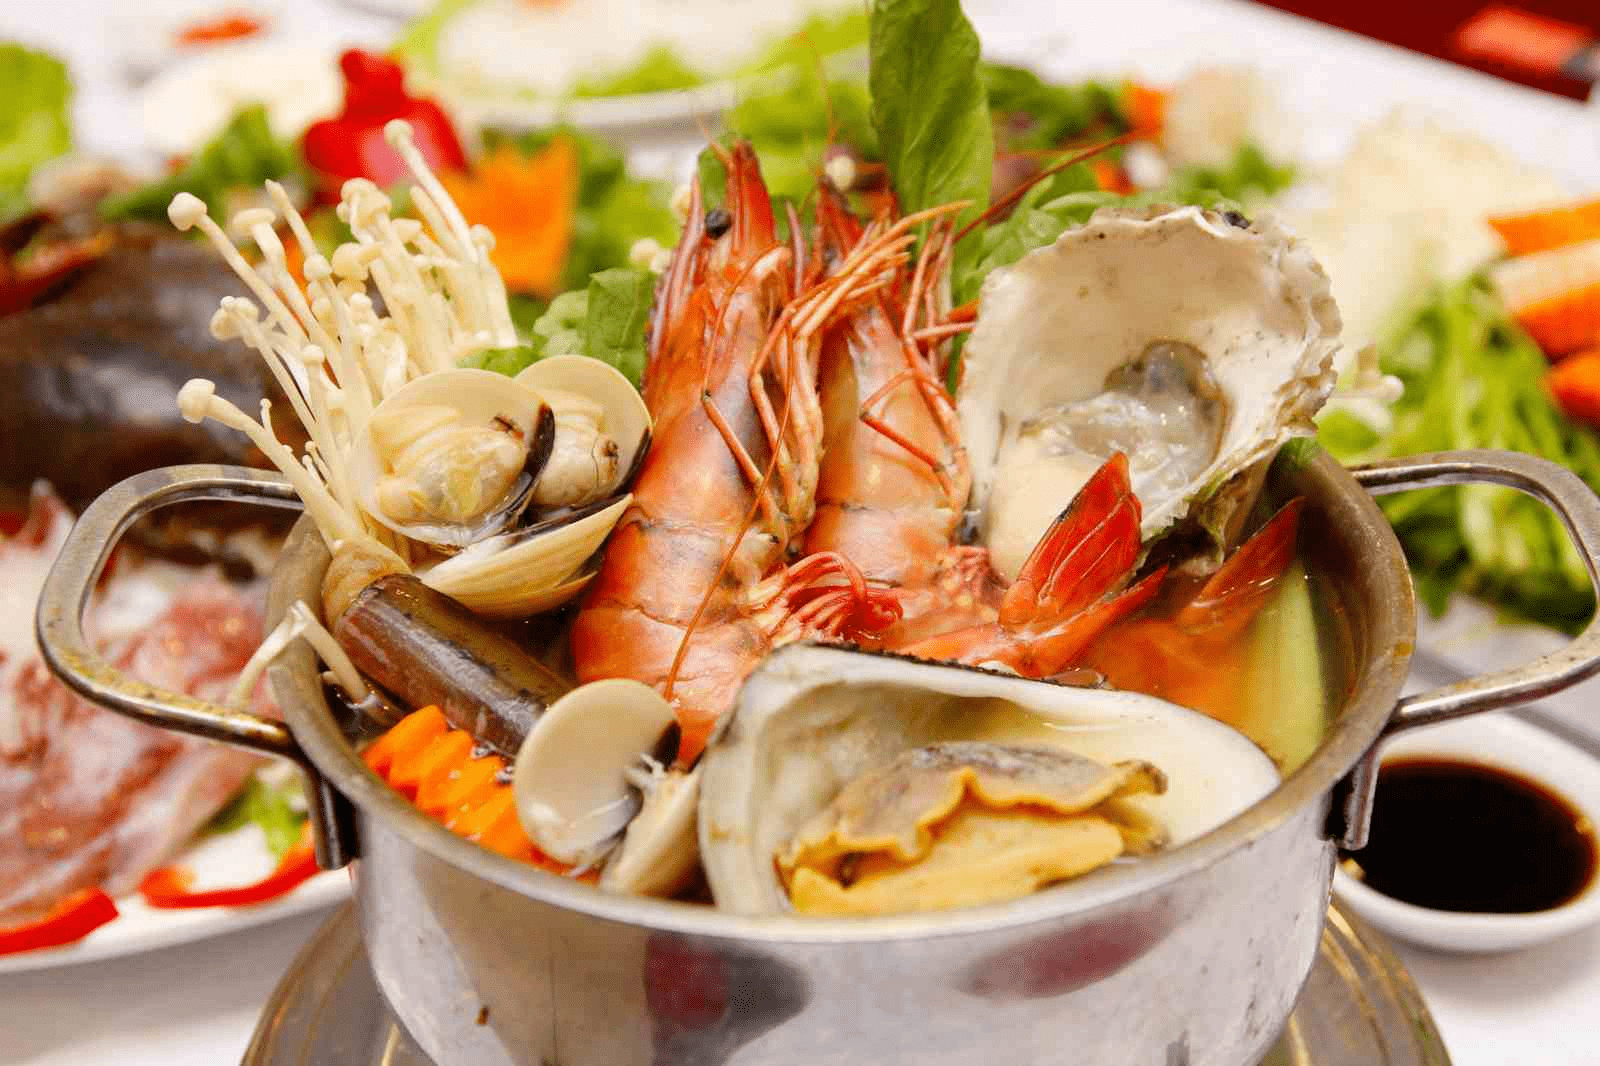 nhà hàng hải sản bình dân ở Sài Gòn 